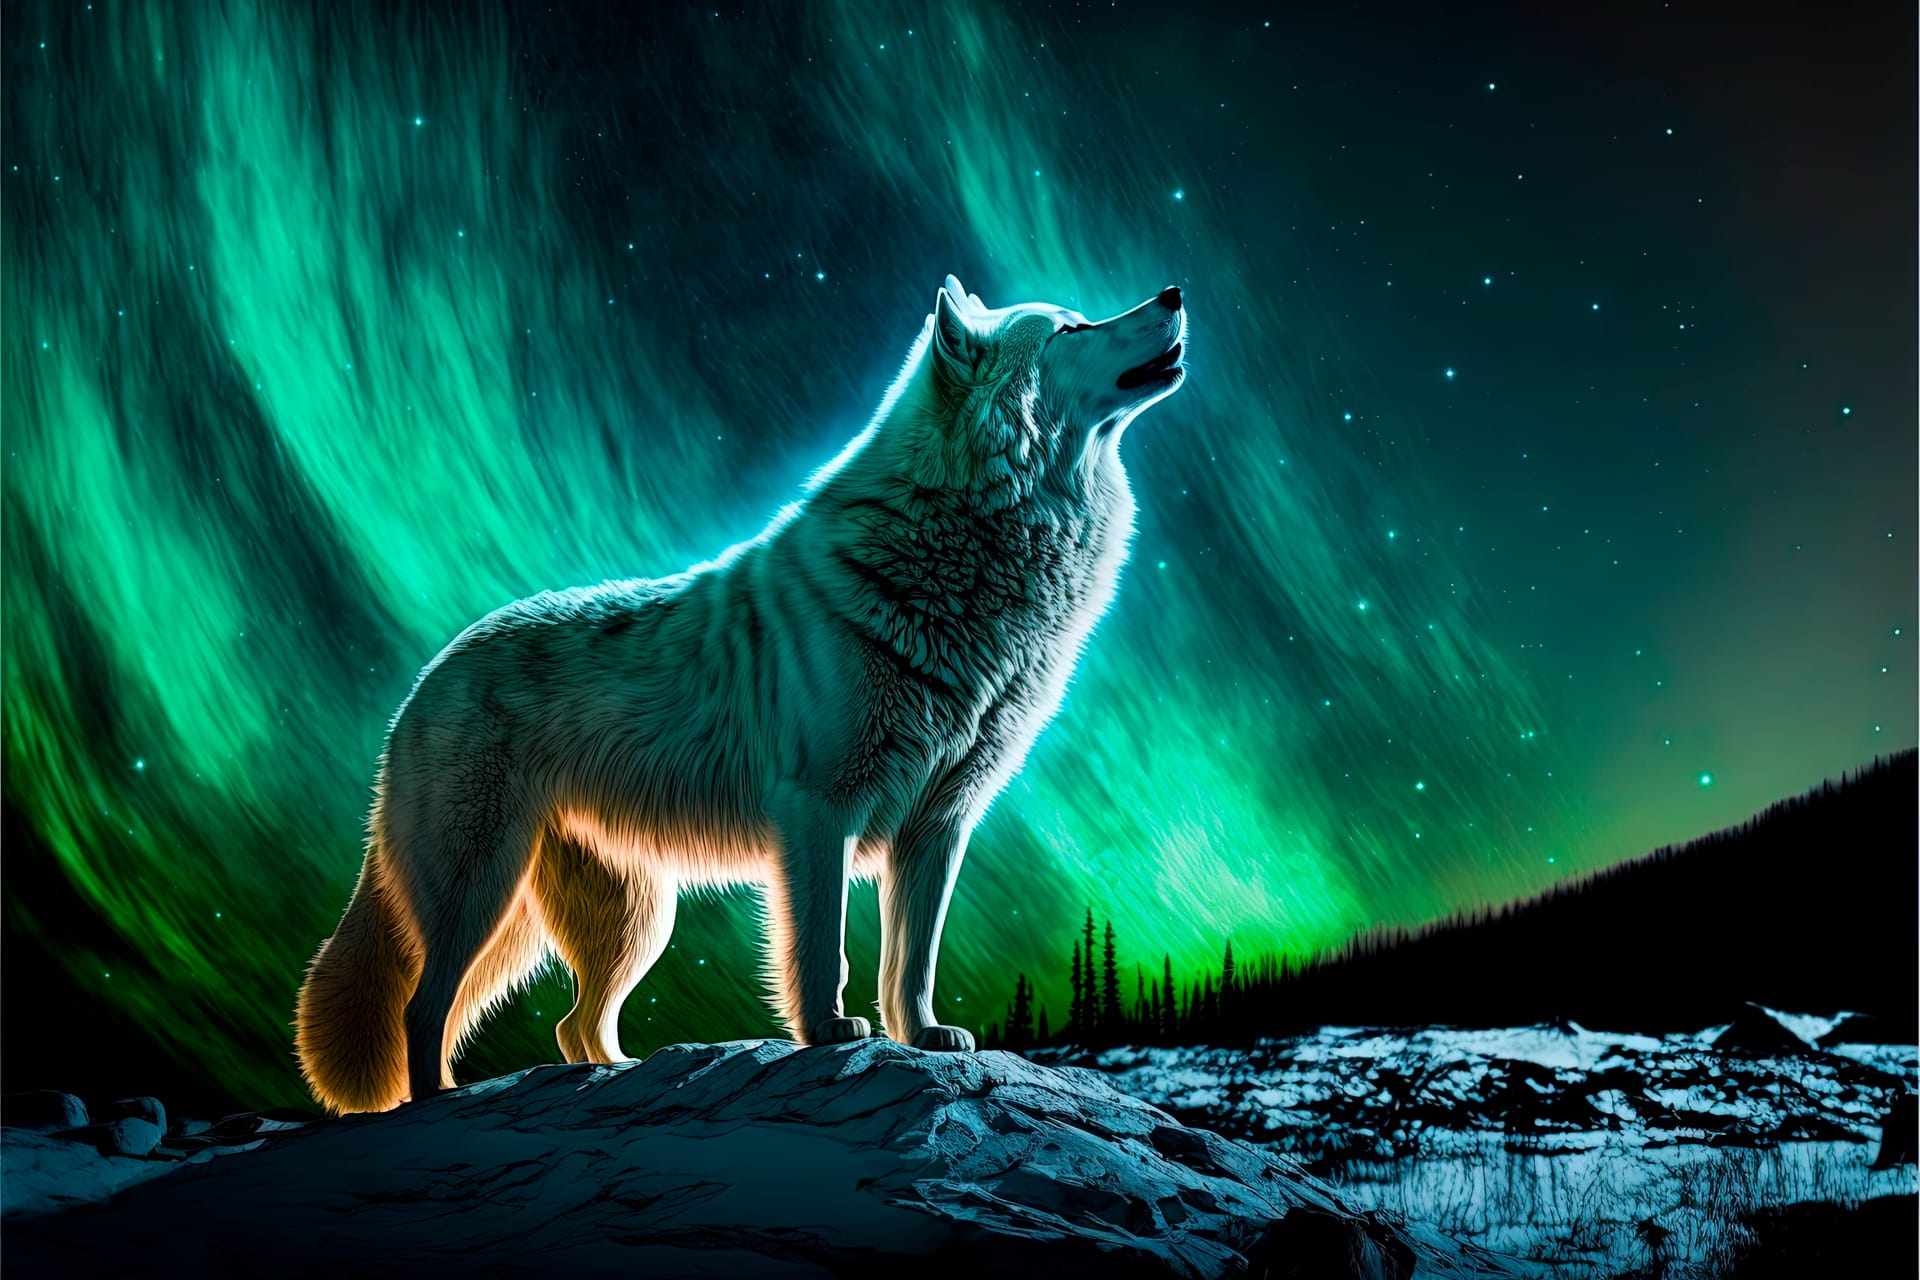 Lone wolf sings his song top night digital art